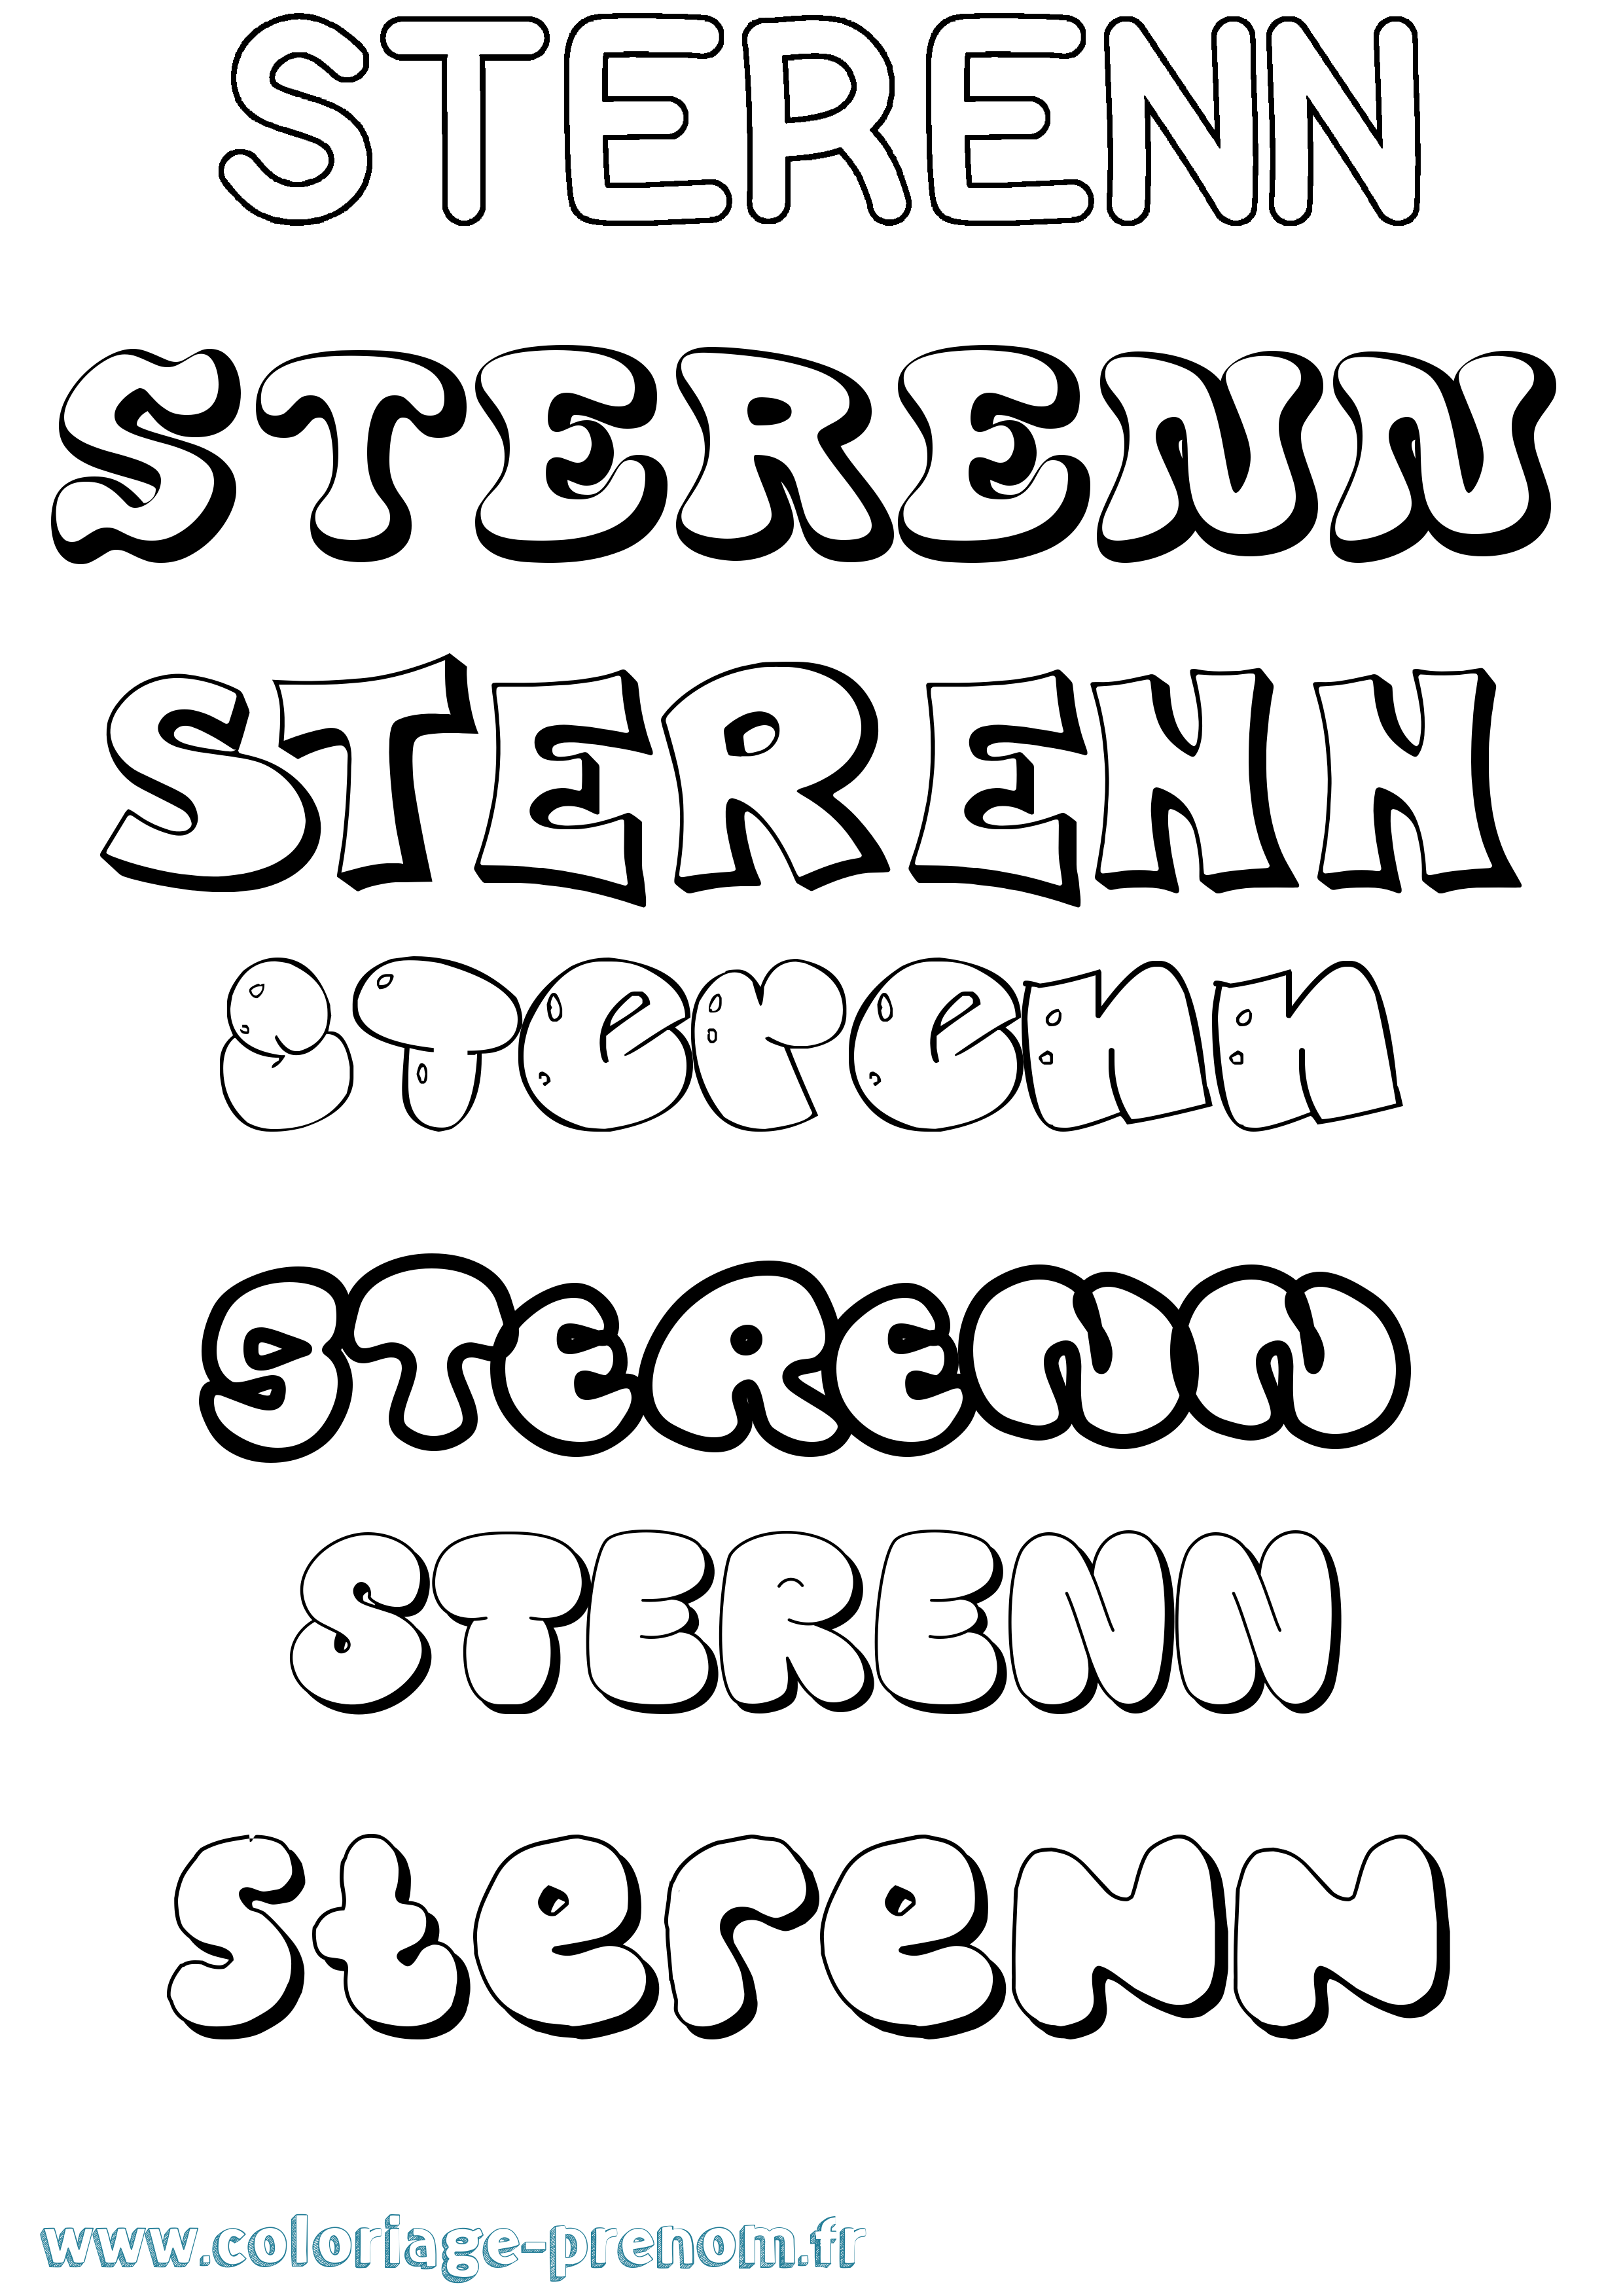 Coloriage prénom Sterenn Bubble